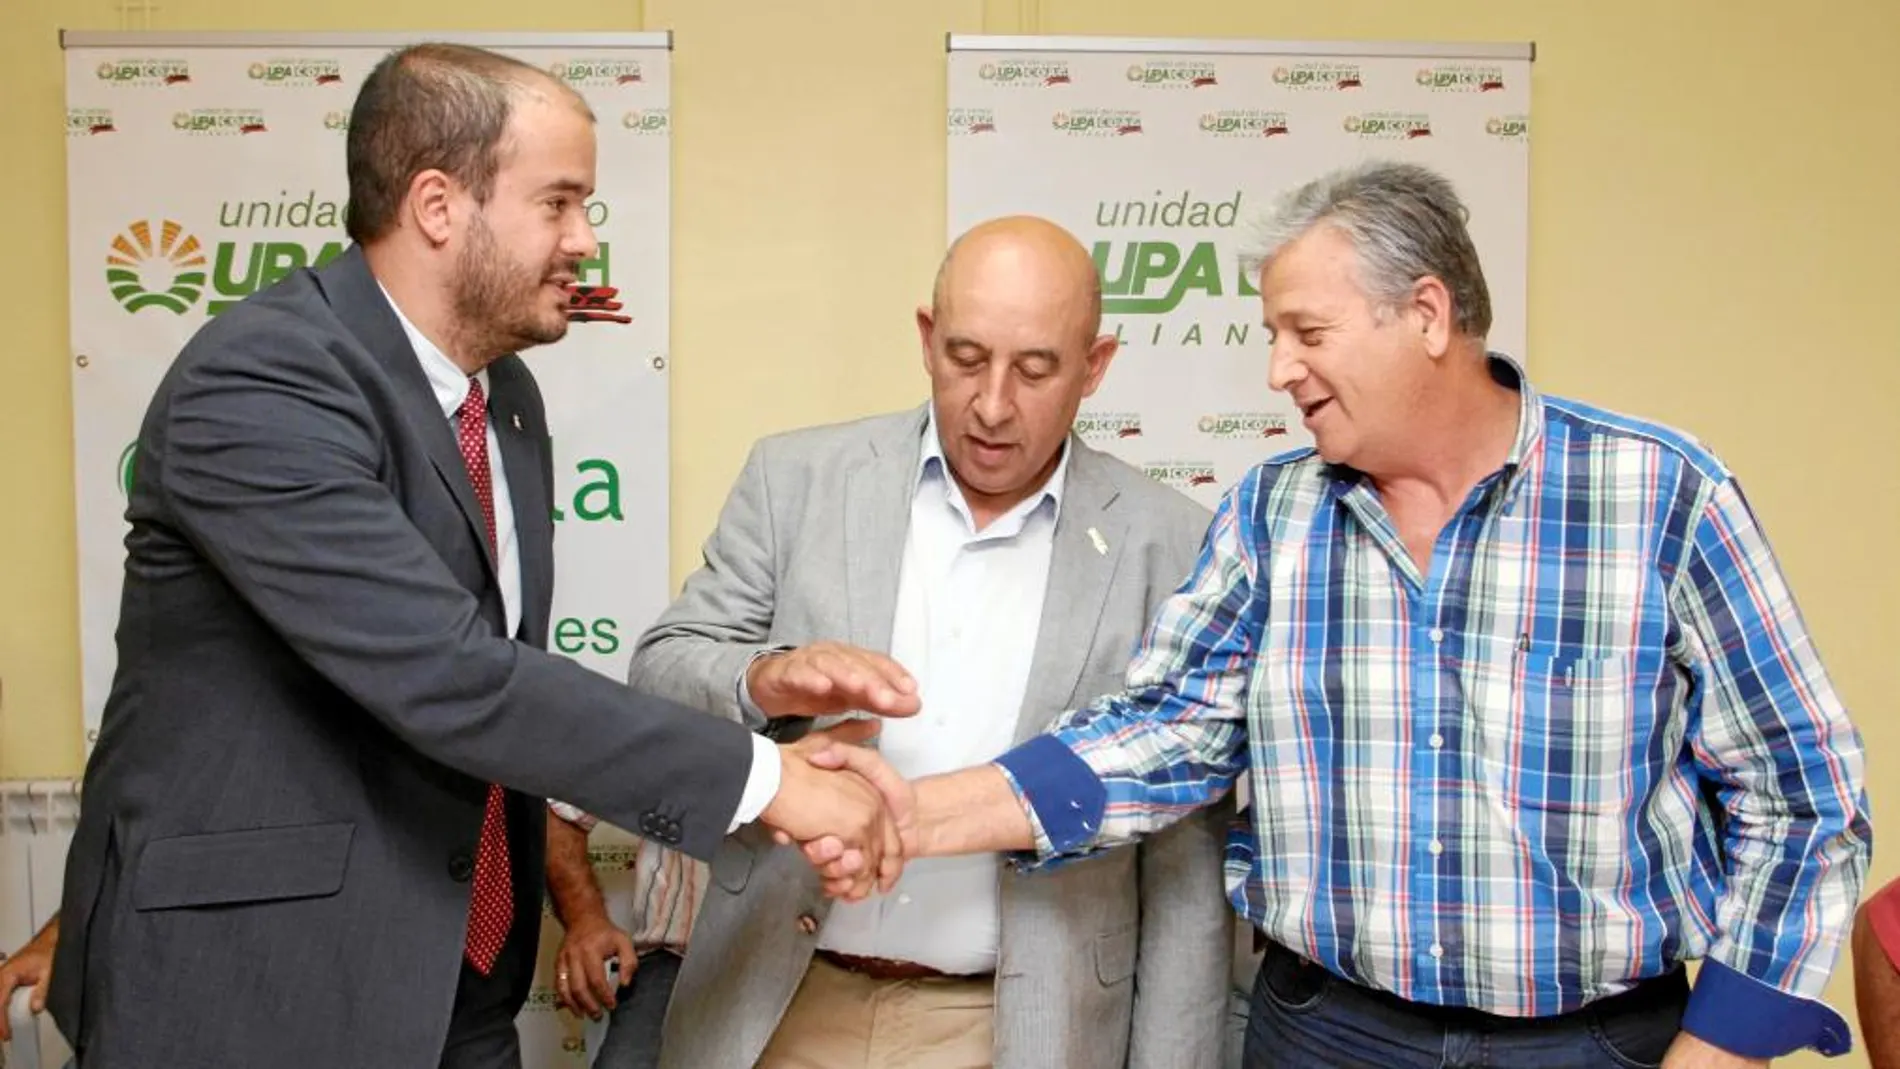 Julio López y Aurelio Pérez, de Alianza por la Unidad UPA-COAG, firman un acuerdo con Vicente Merino, de la empresa Magdala & Mf Investment